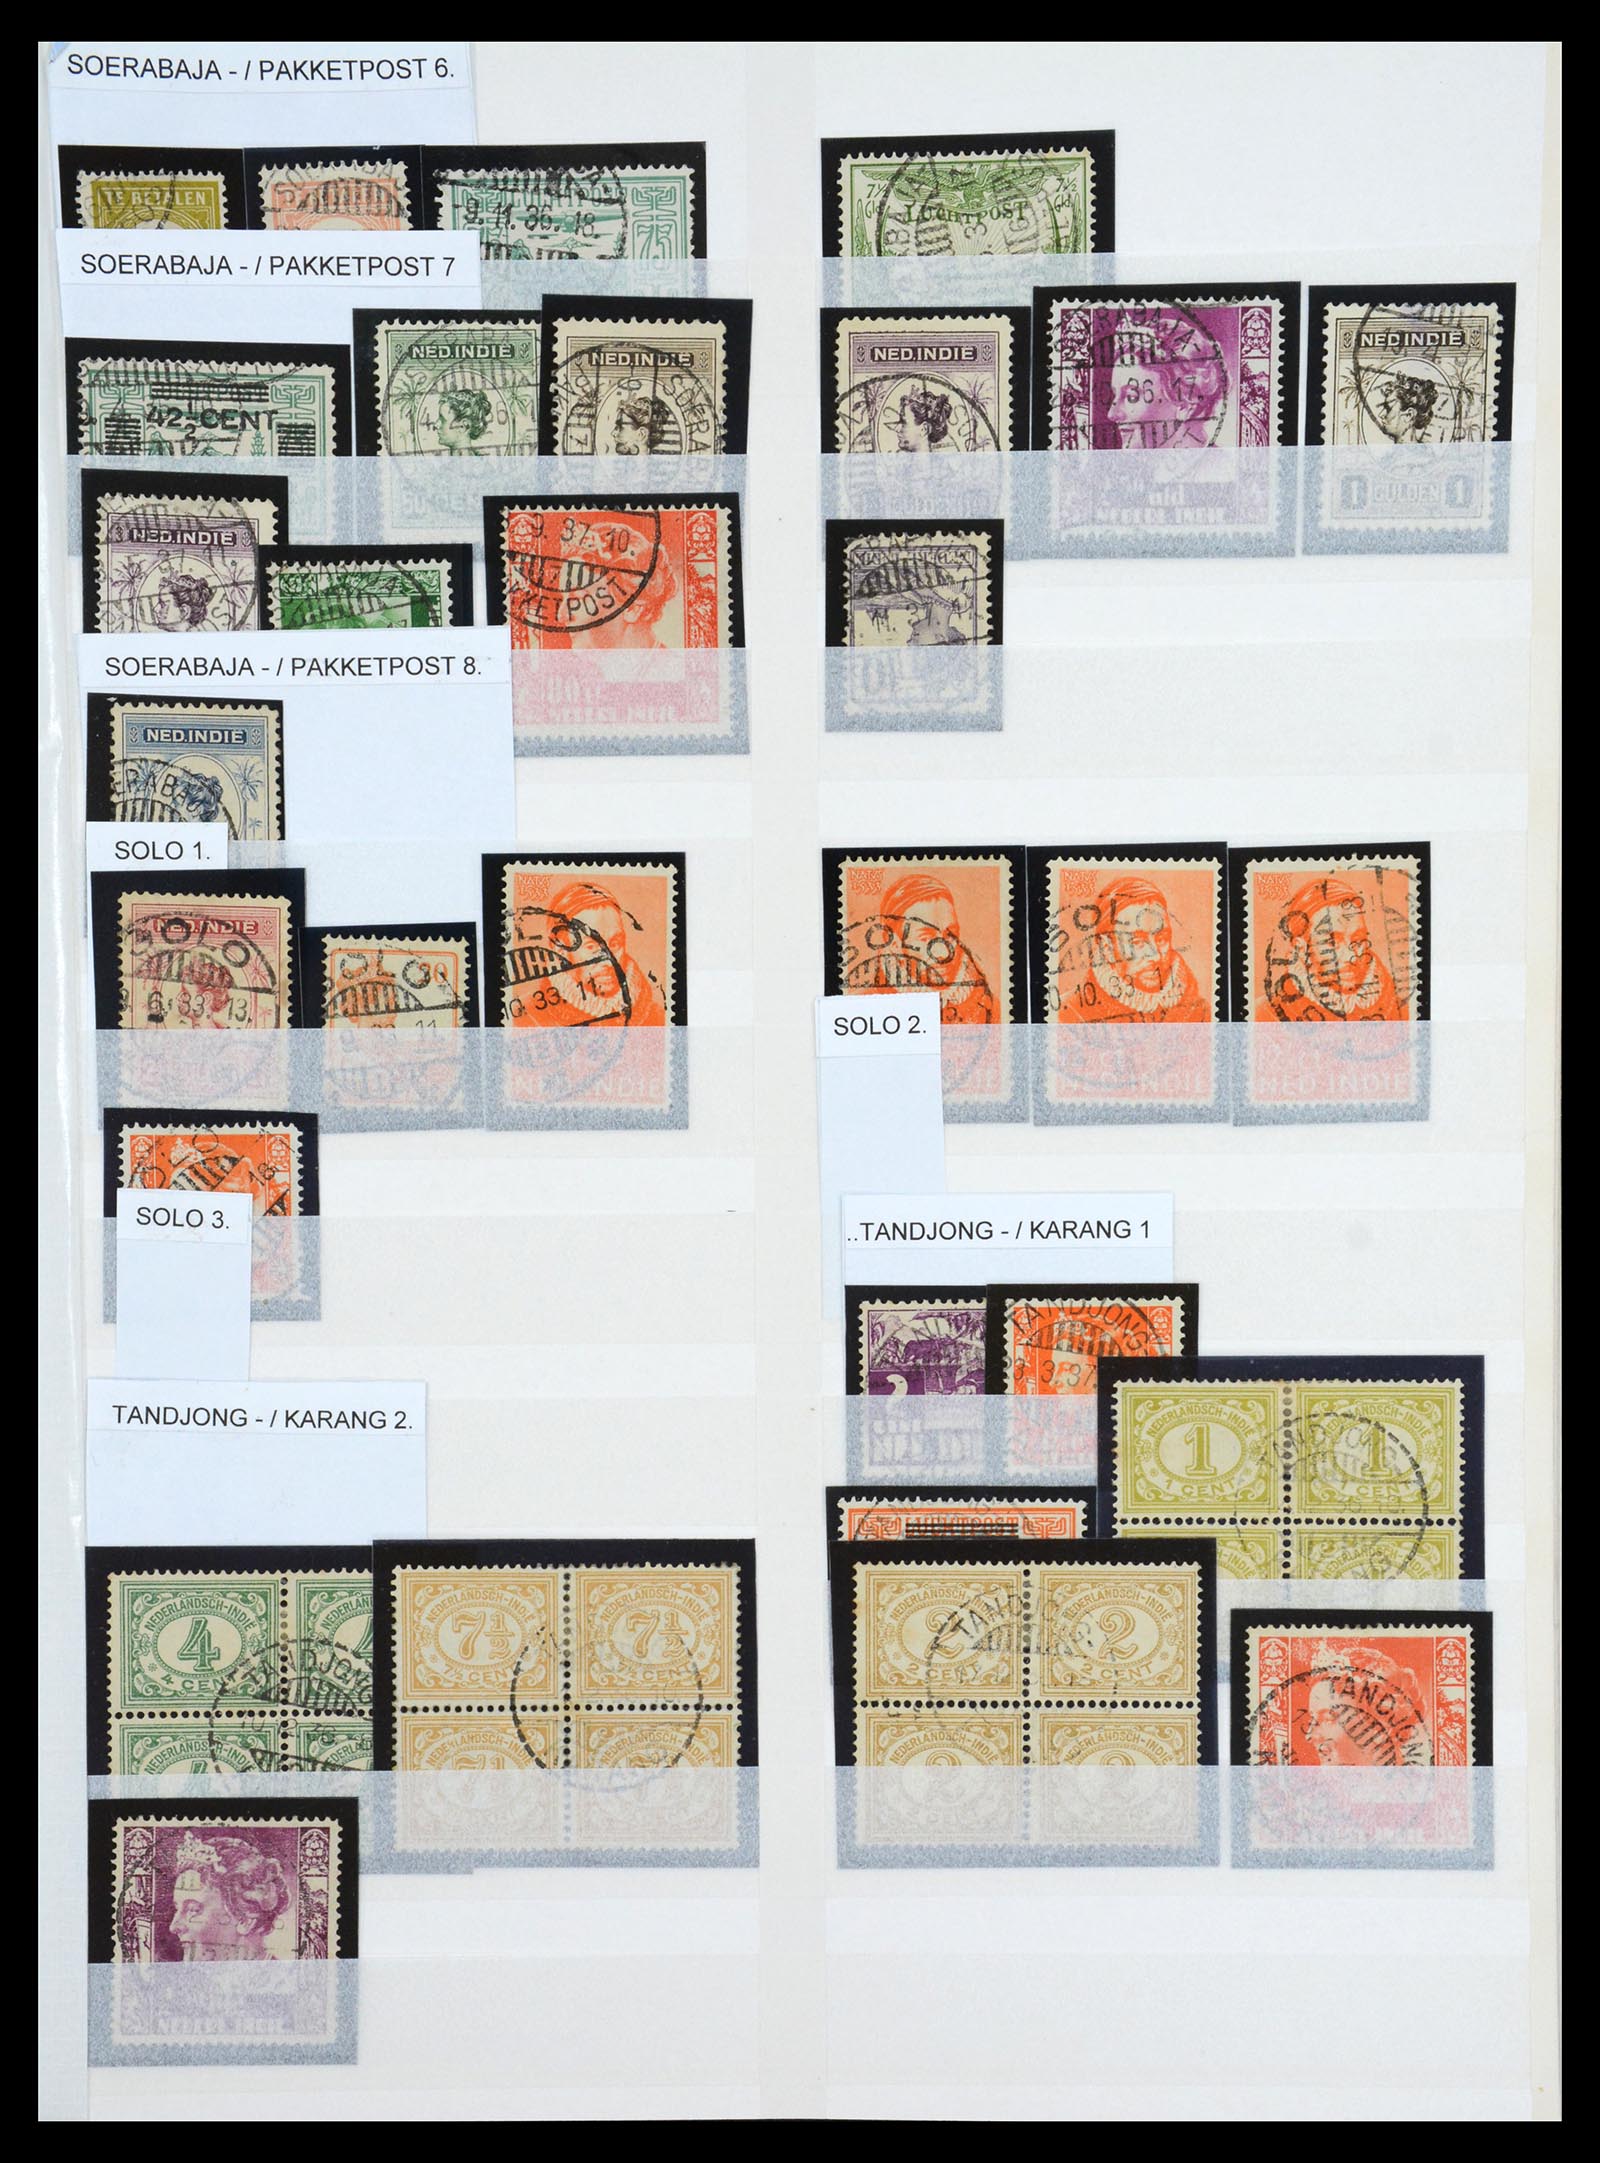 36617 021 - Stamp collection 36617 Nederlands Indië stempels.